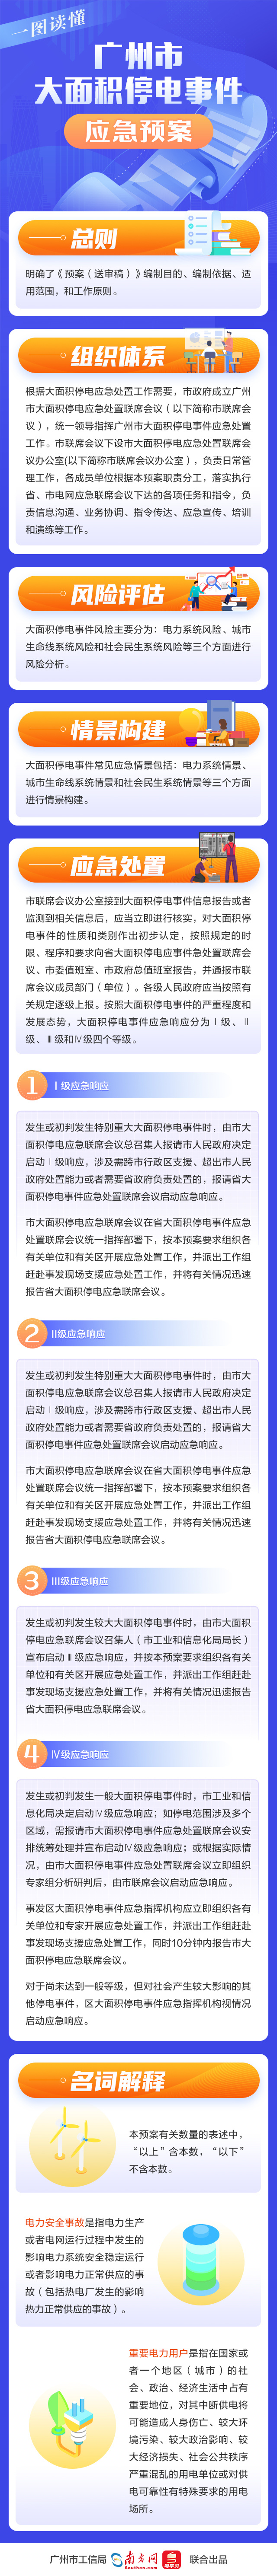 一图读懂《广州市大面积停电事件应急预案》